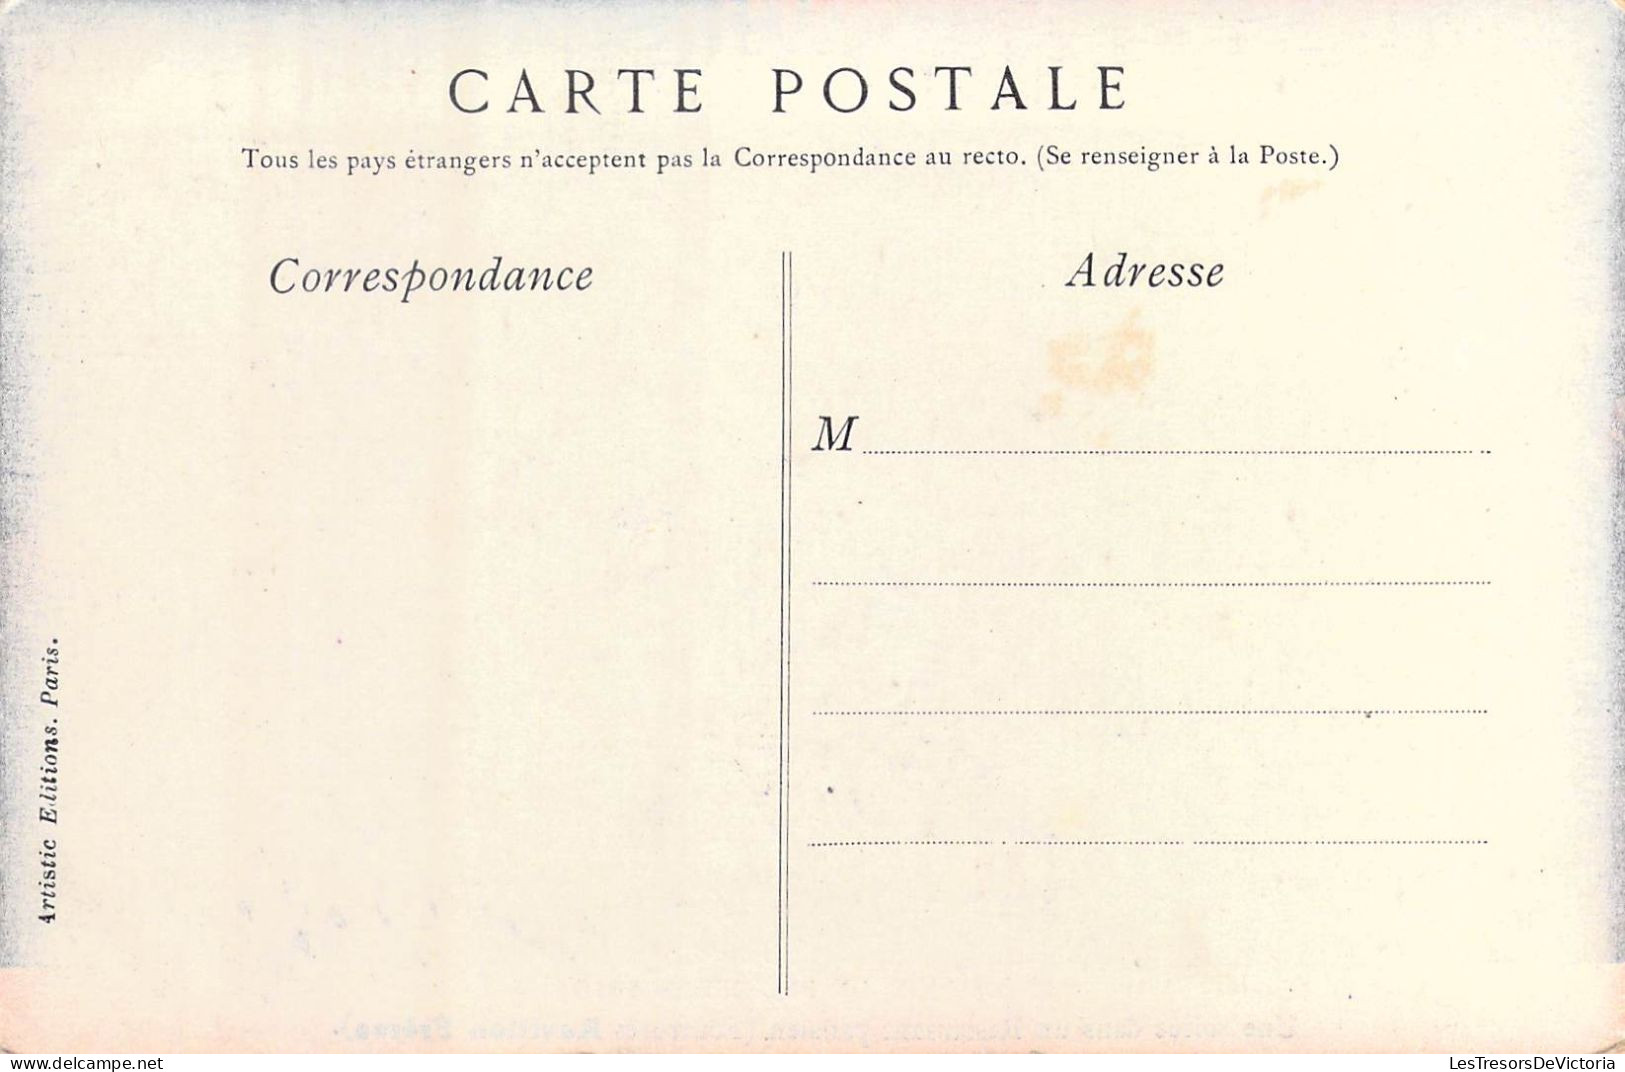 BELGIQUE - Exposition De Bruxelles 1910 - Une Soirée Dans Un Restaurant Parisien - Carte Postale Ancienne - Mostre Universali